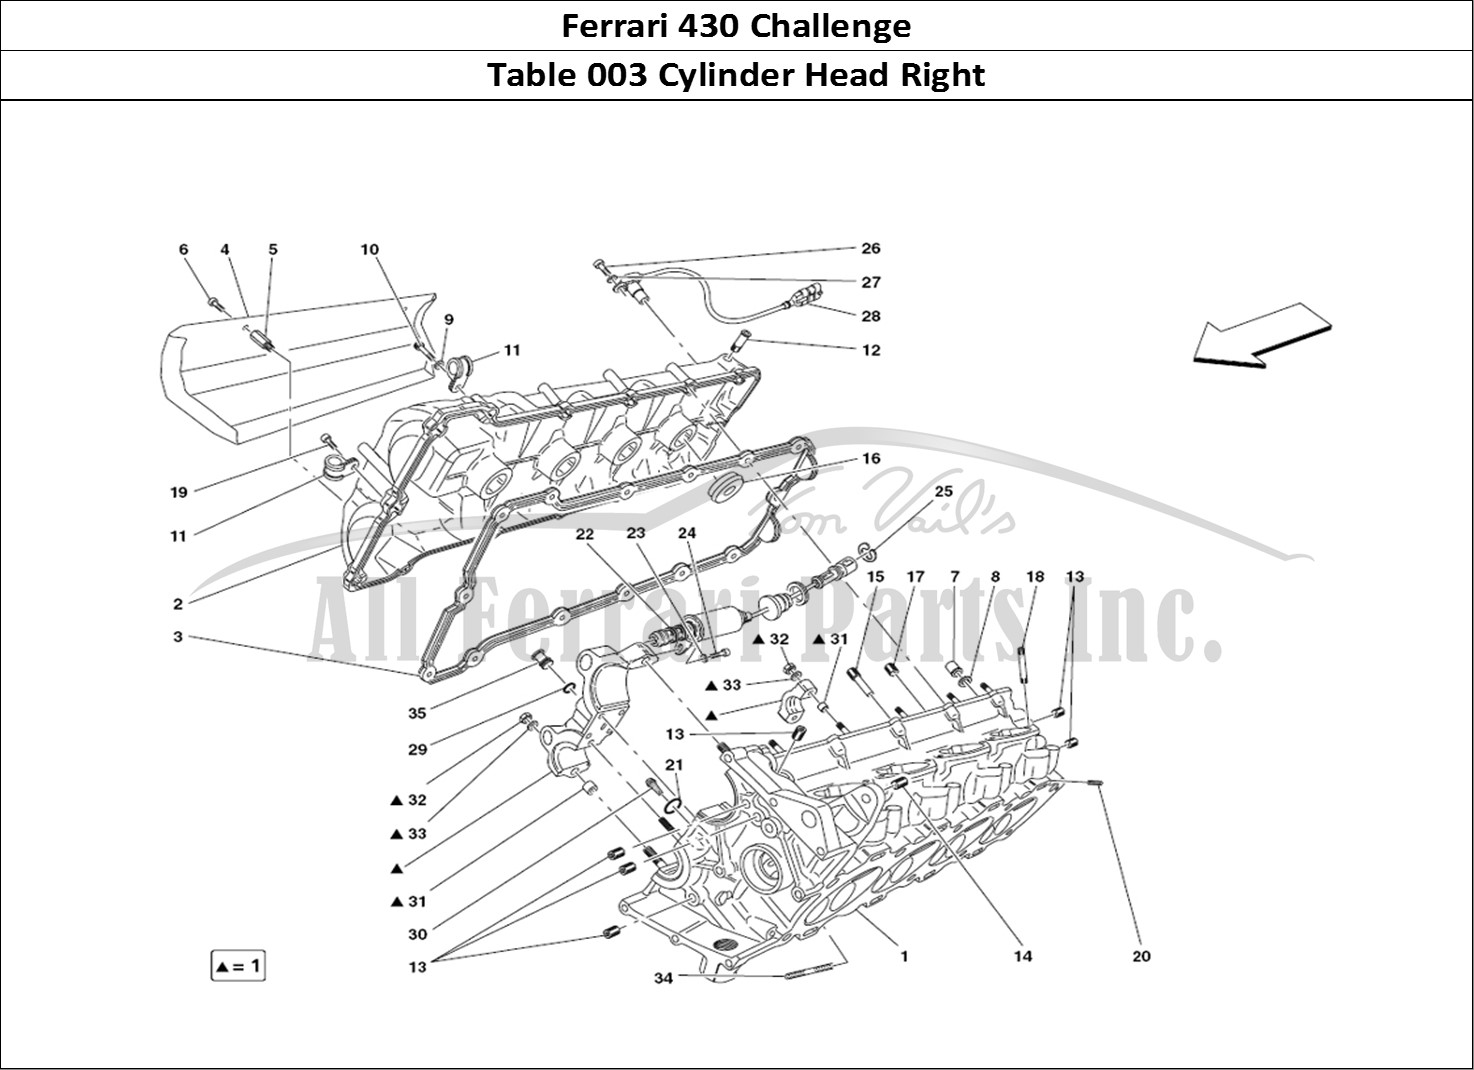 Ferrari Parts Ferrari 430 Challenge (2006) Page 003 RH cylinder head